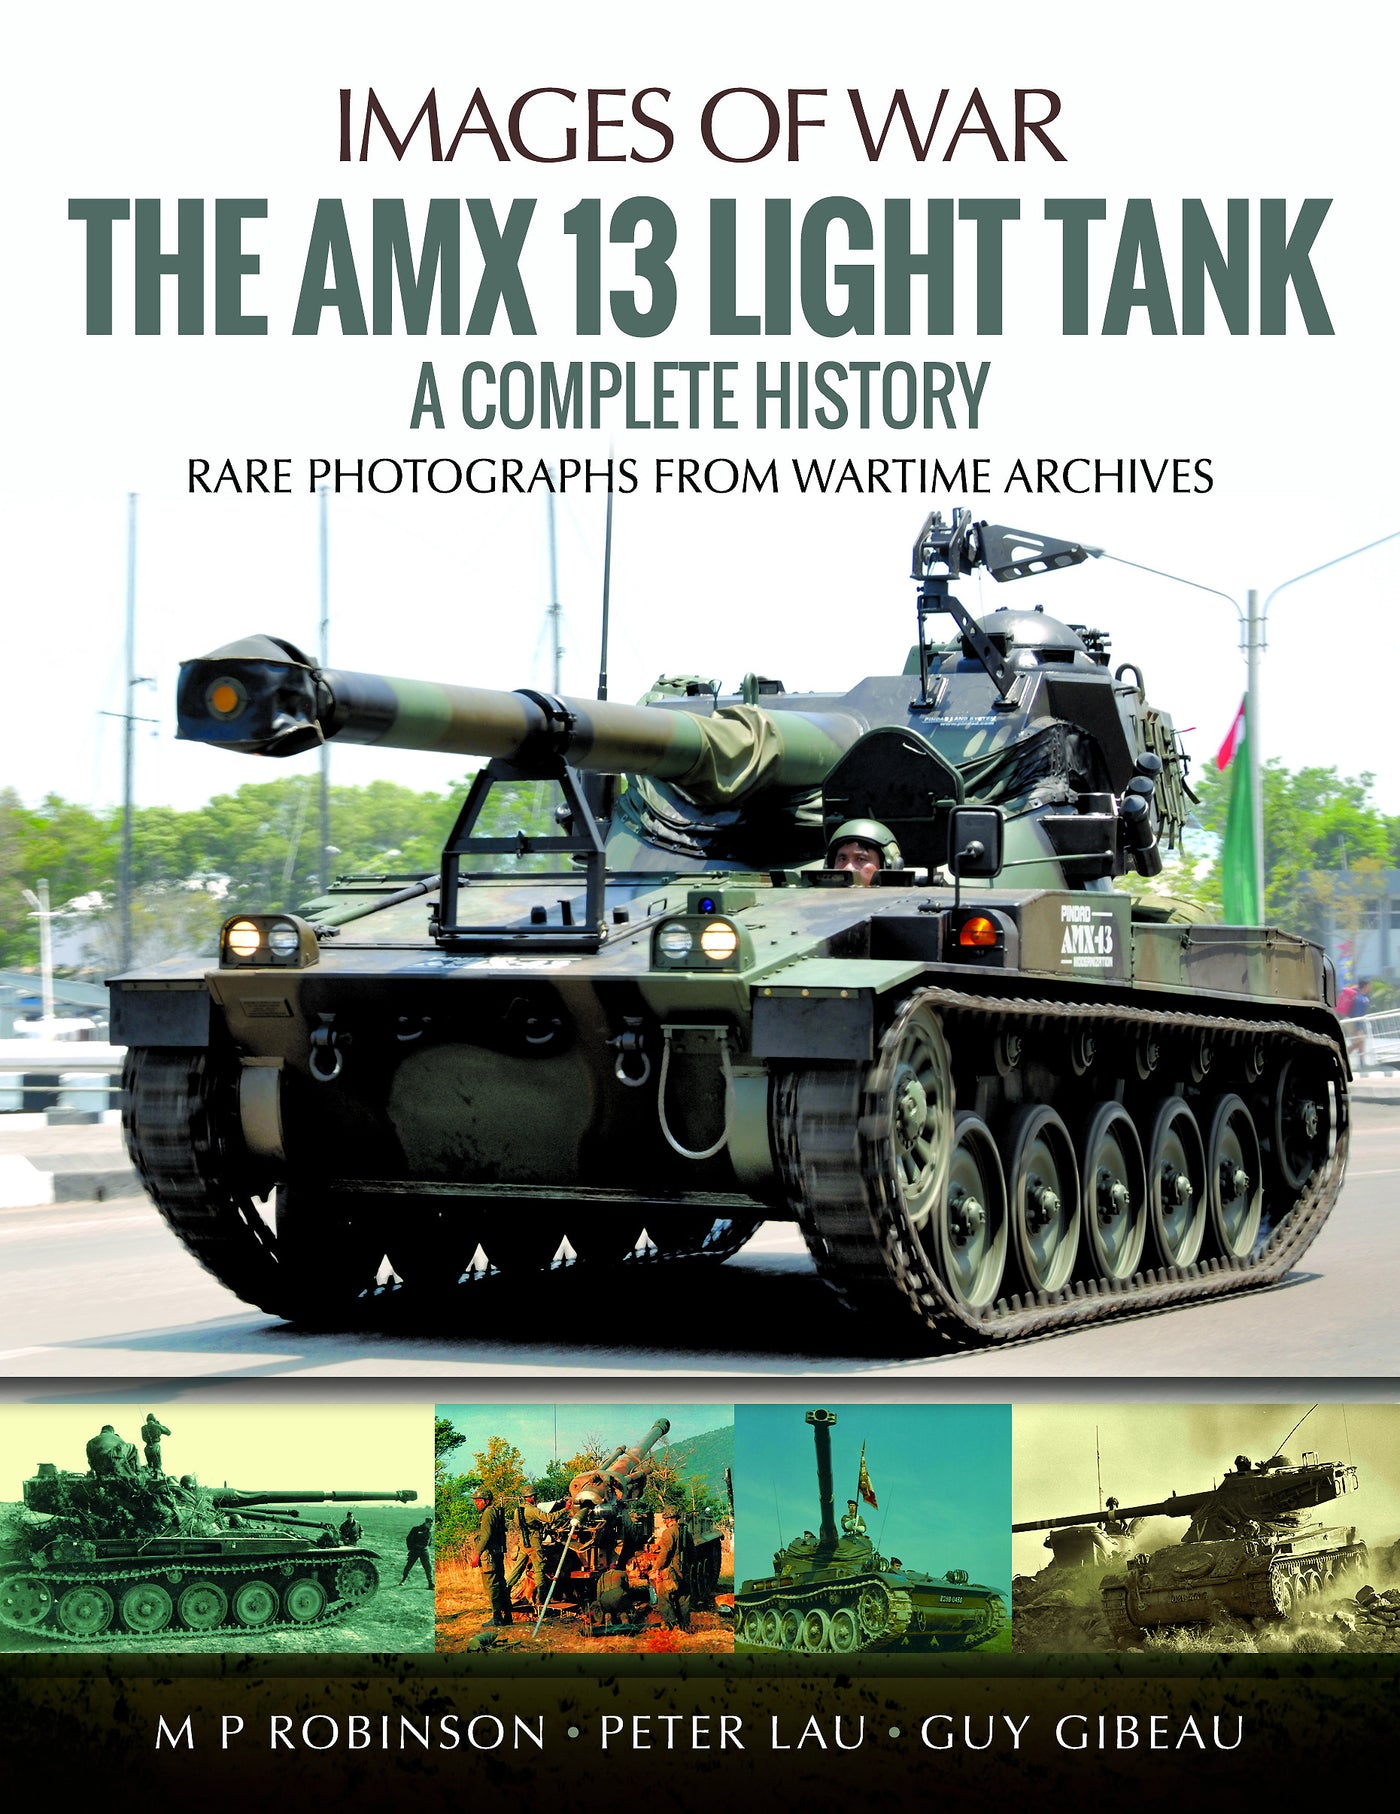 Der leichte Panzer AMX 13 